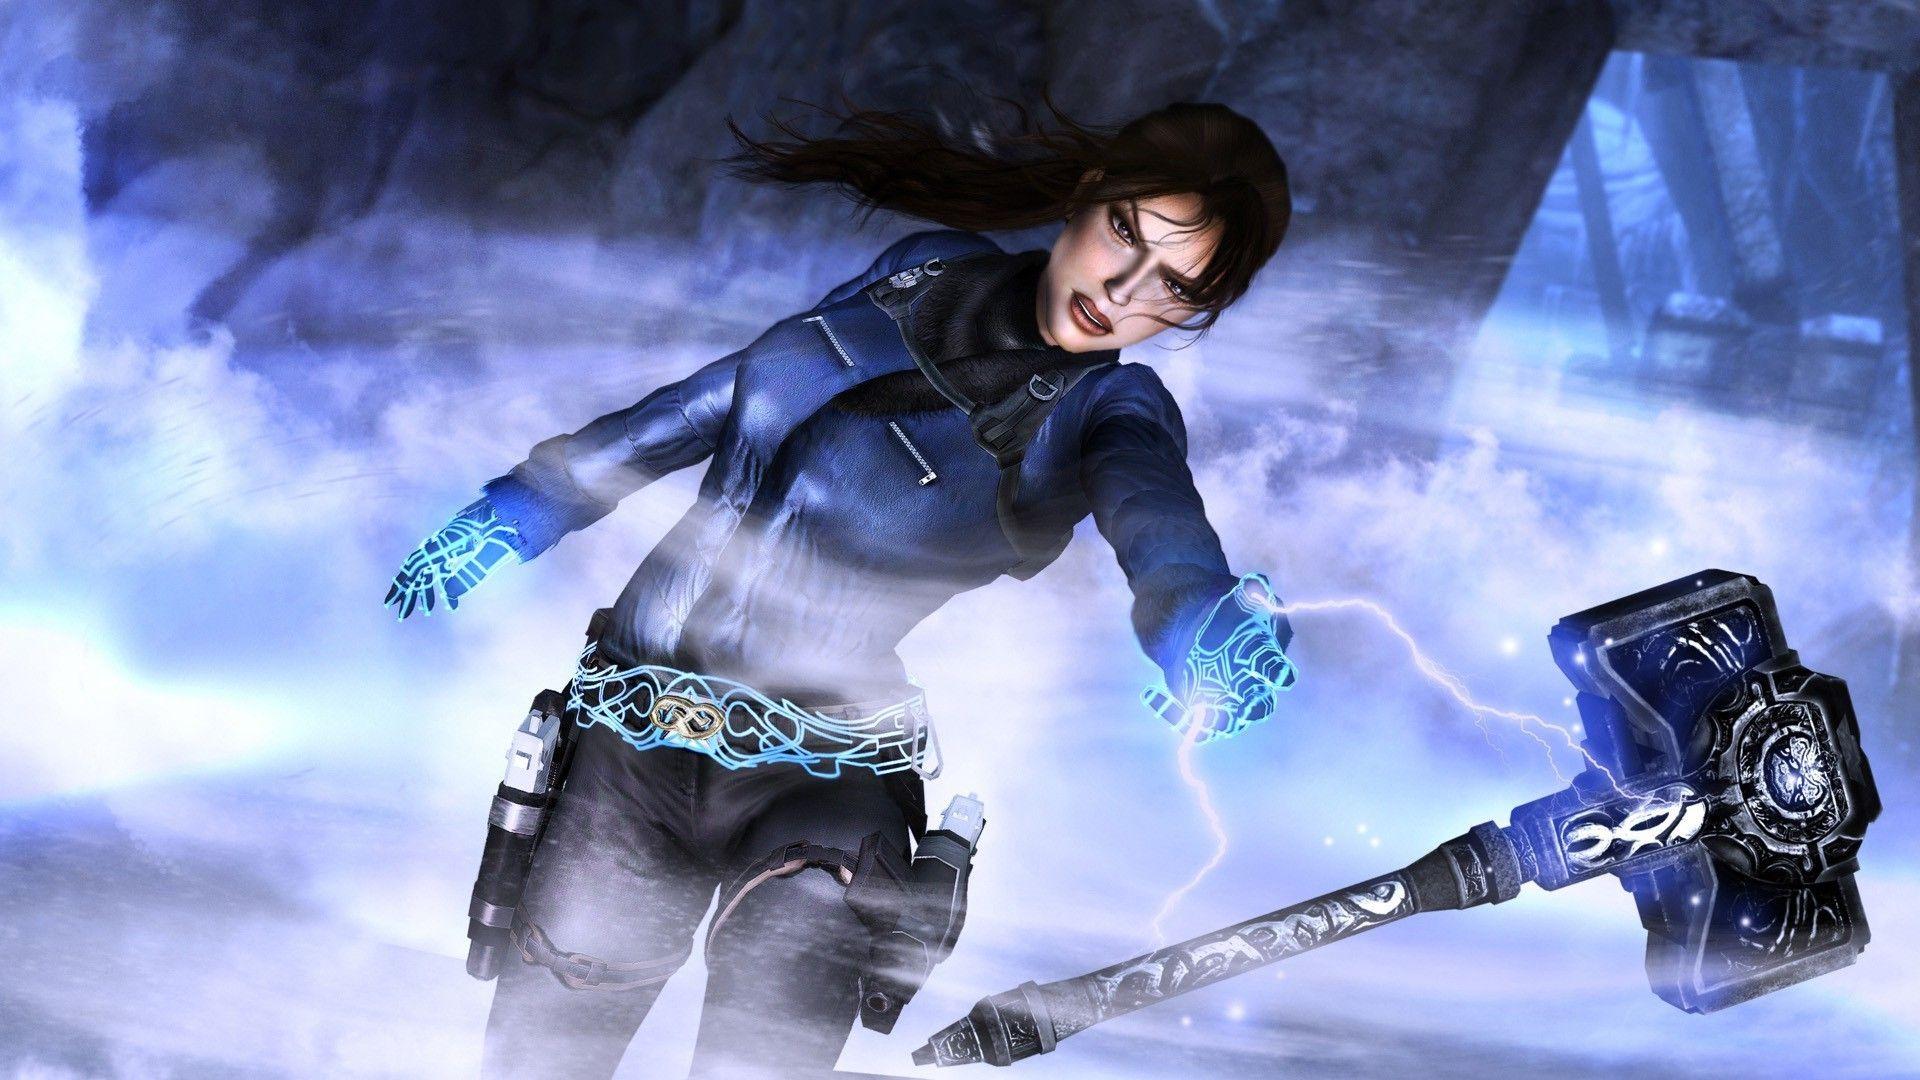 Lara Croft Underworld Wallpaper background picture